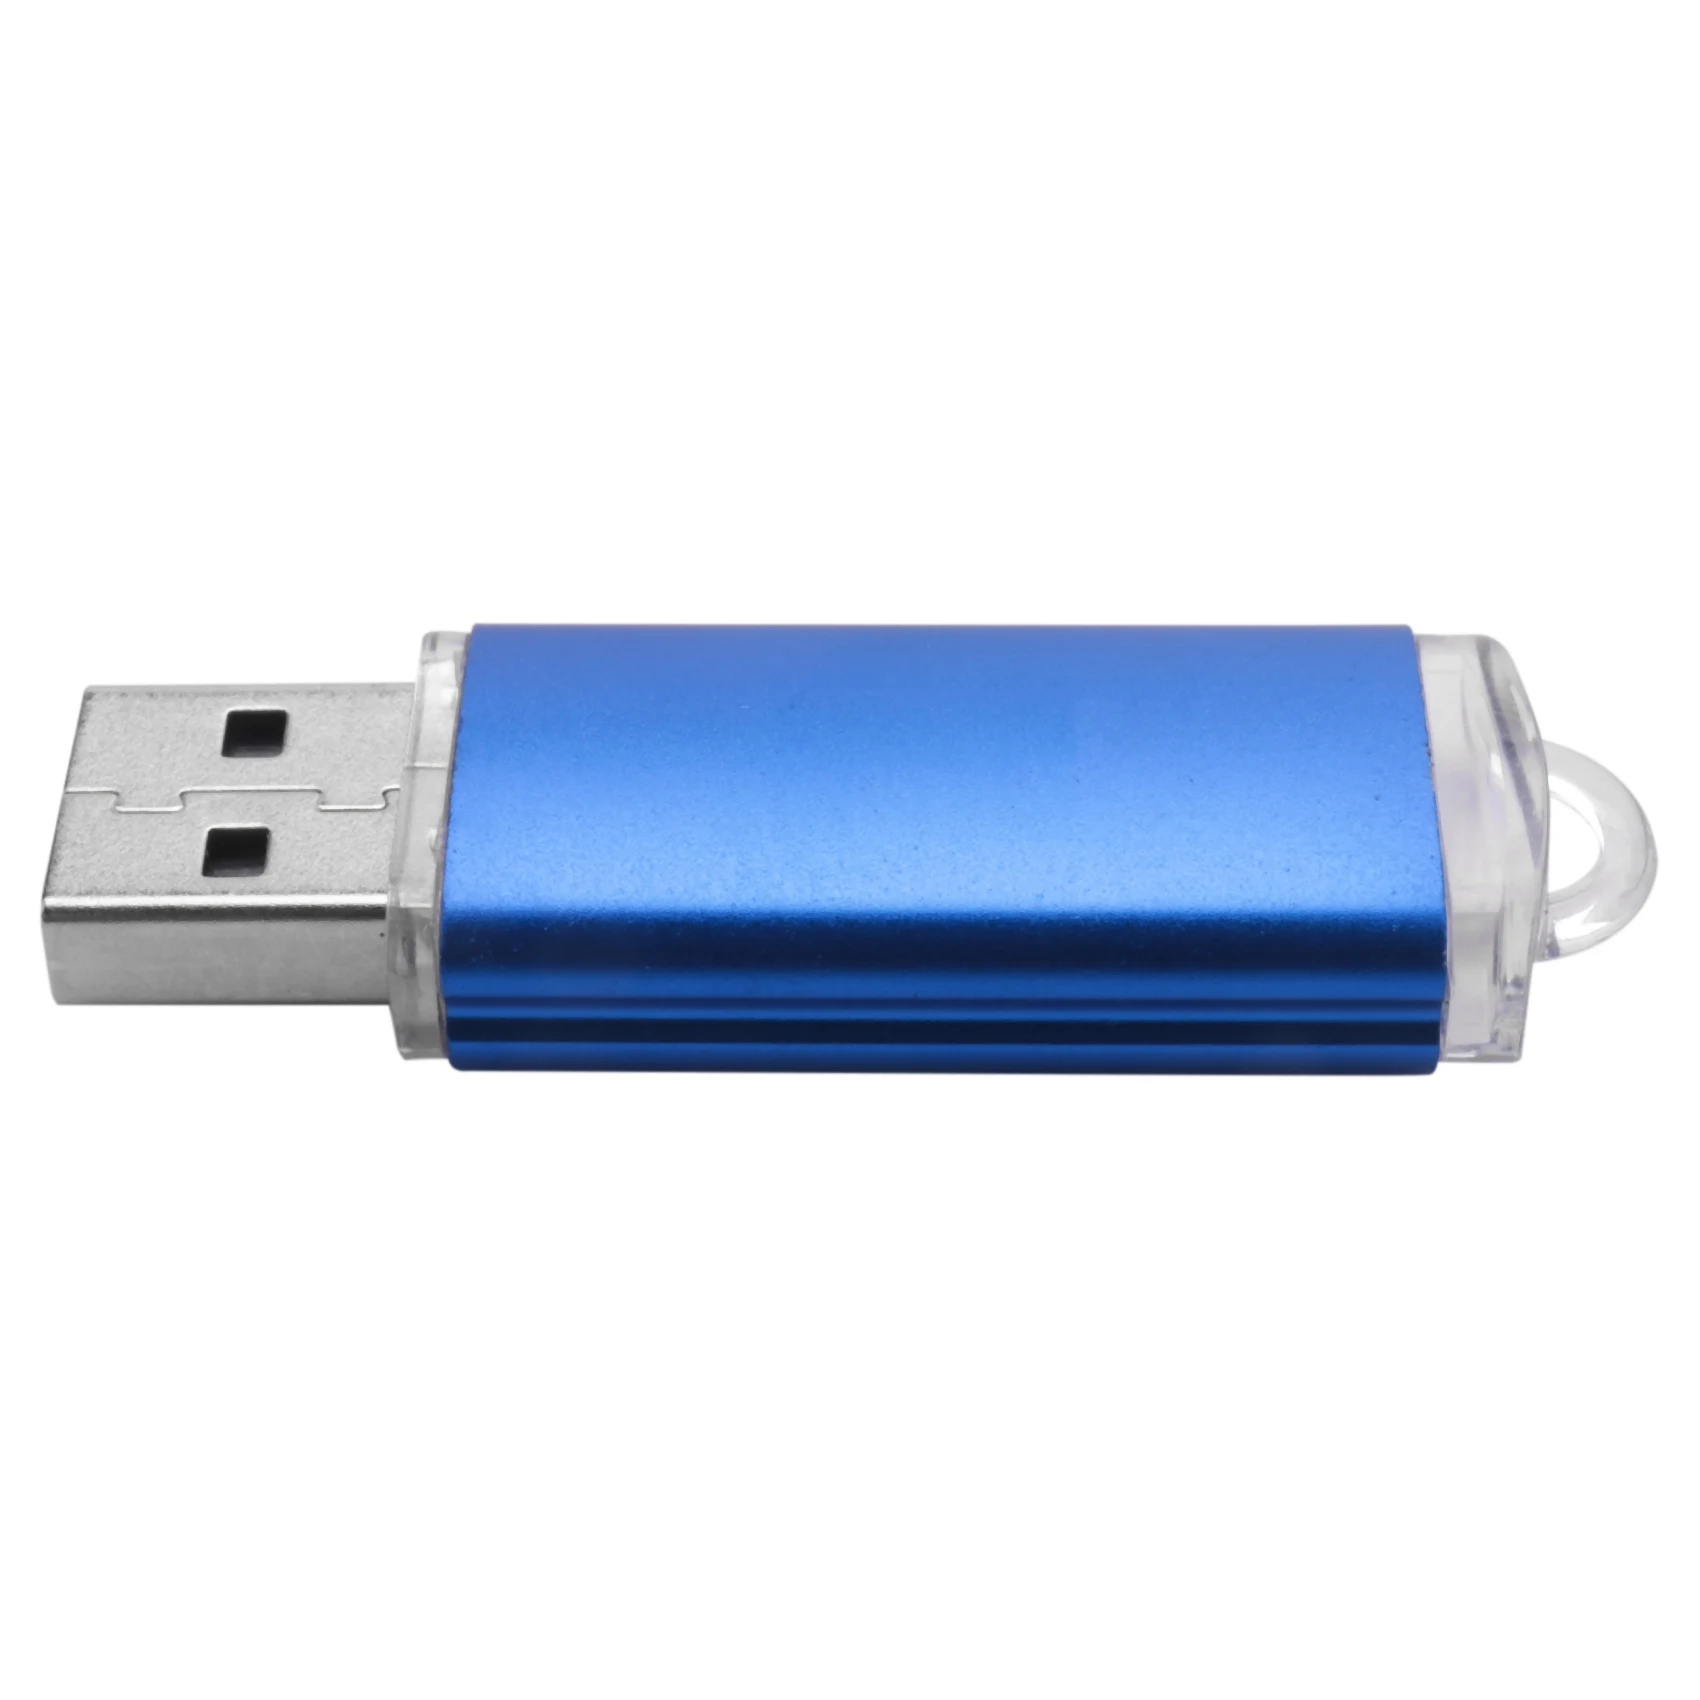 64 МБ USB 2.0 флэш-накопитель флэш-памяти для ПК-НОУТБУКА4